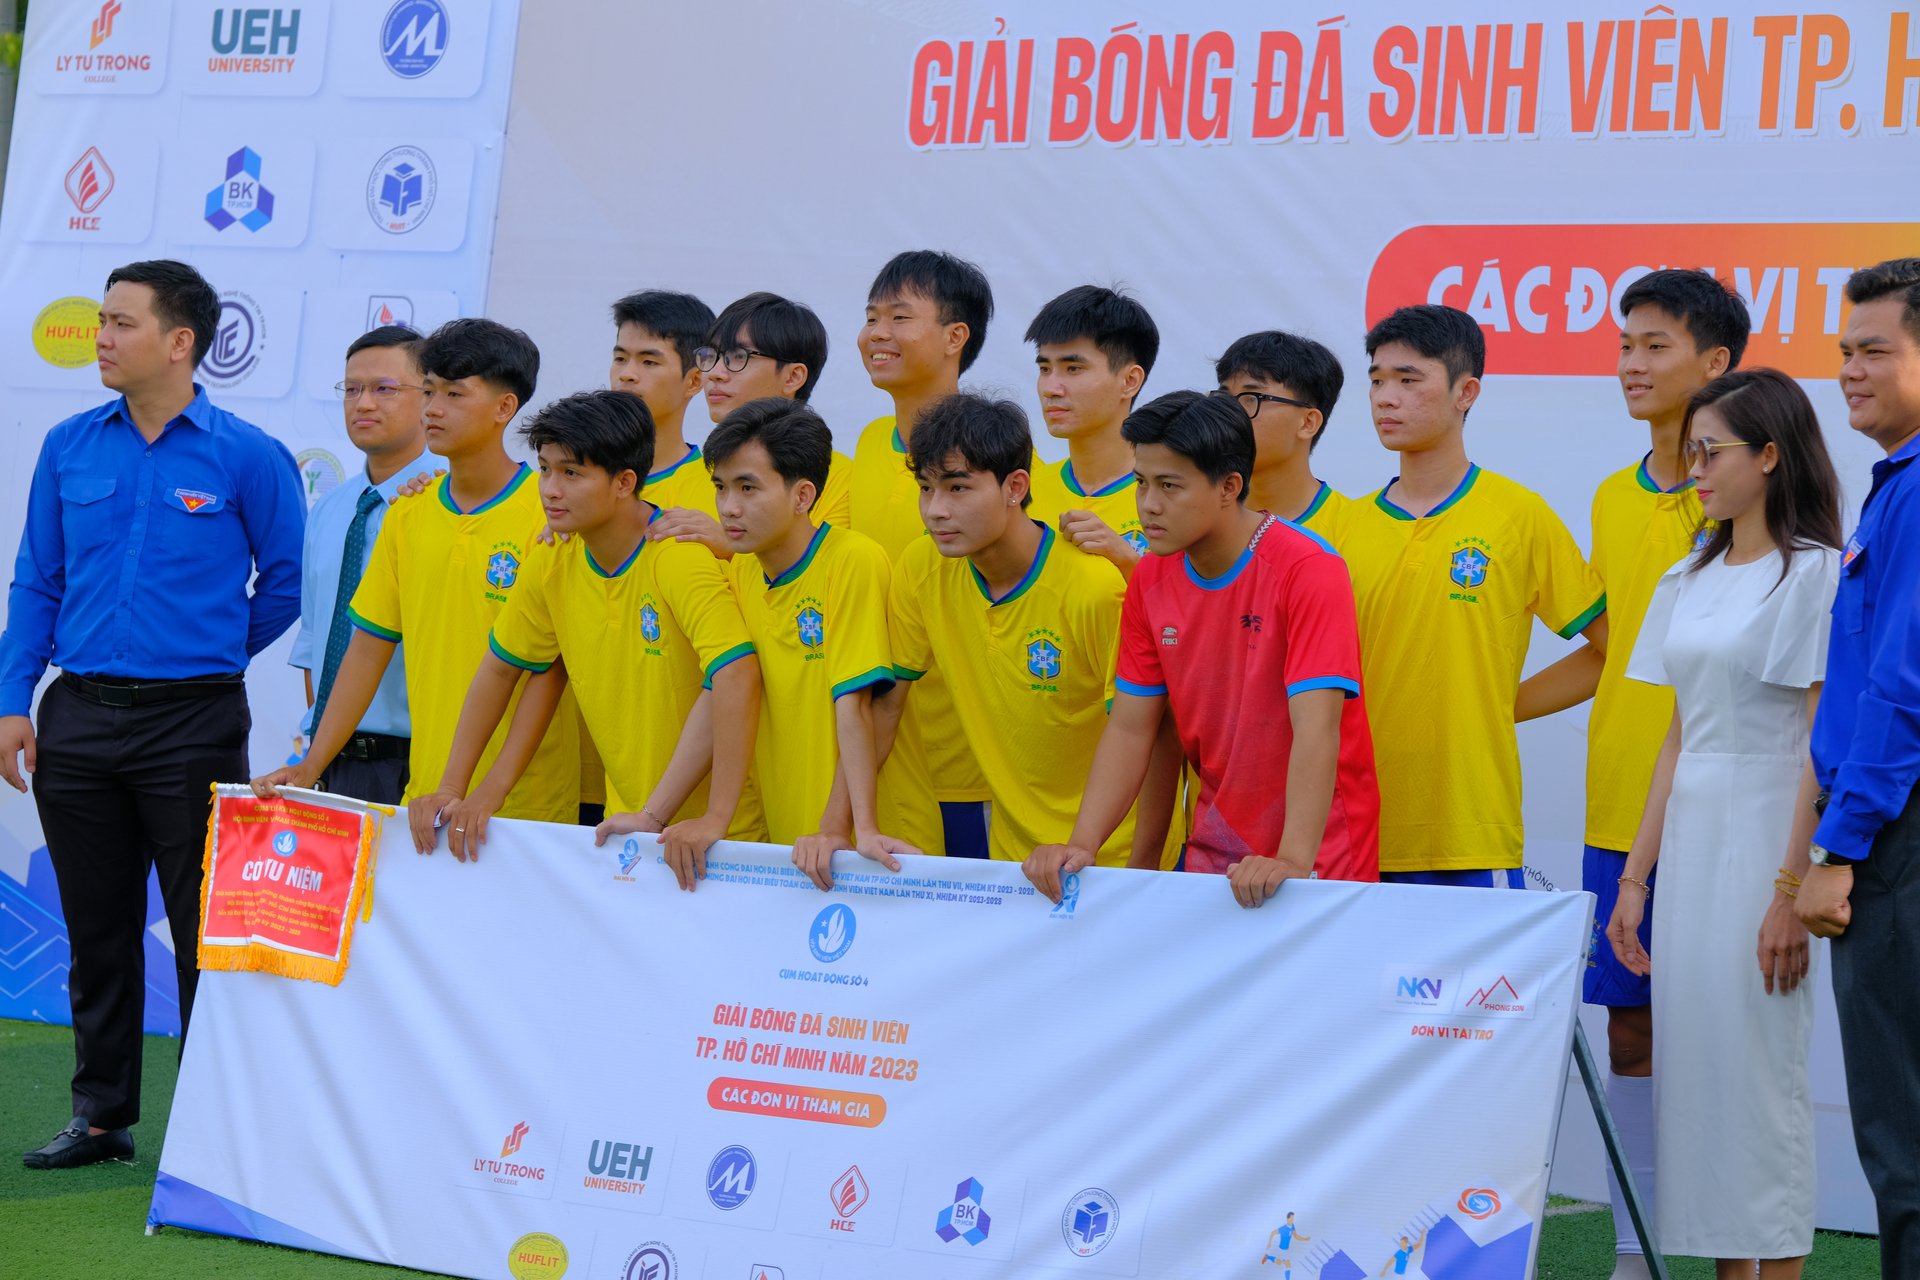 Sinh viên ITC tham gia Giải bóng đá sinh viên TP. Hồ Chí Minh năm 2023